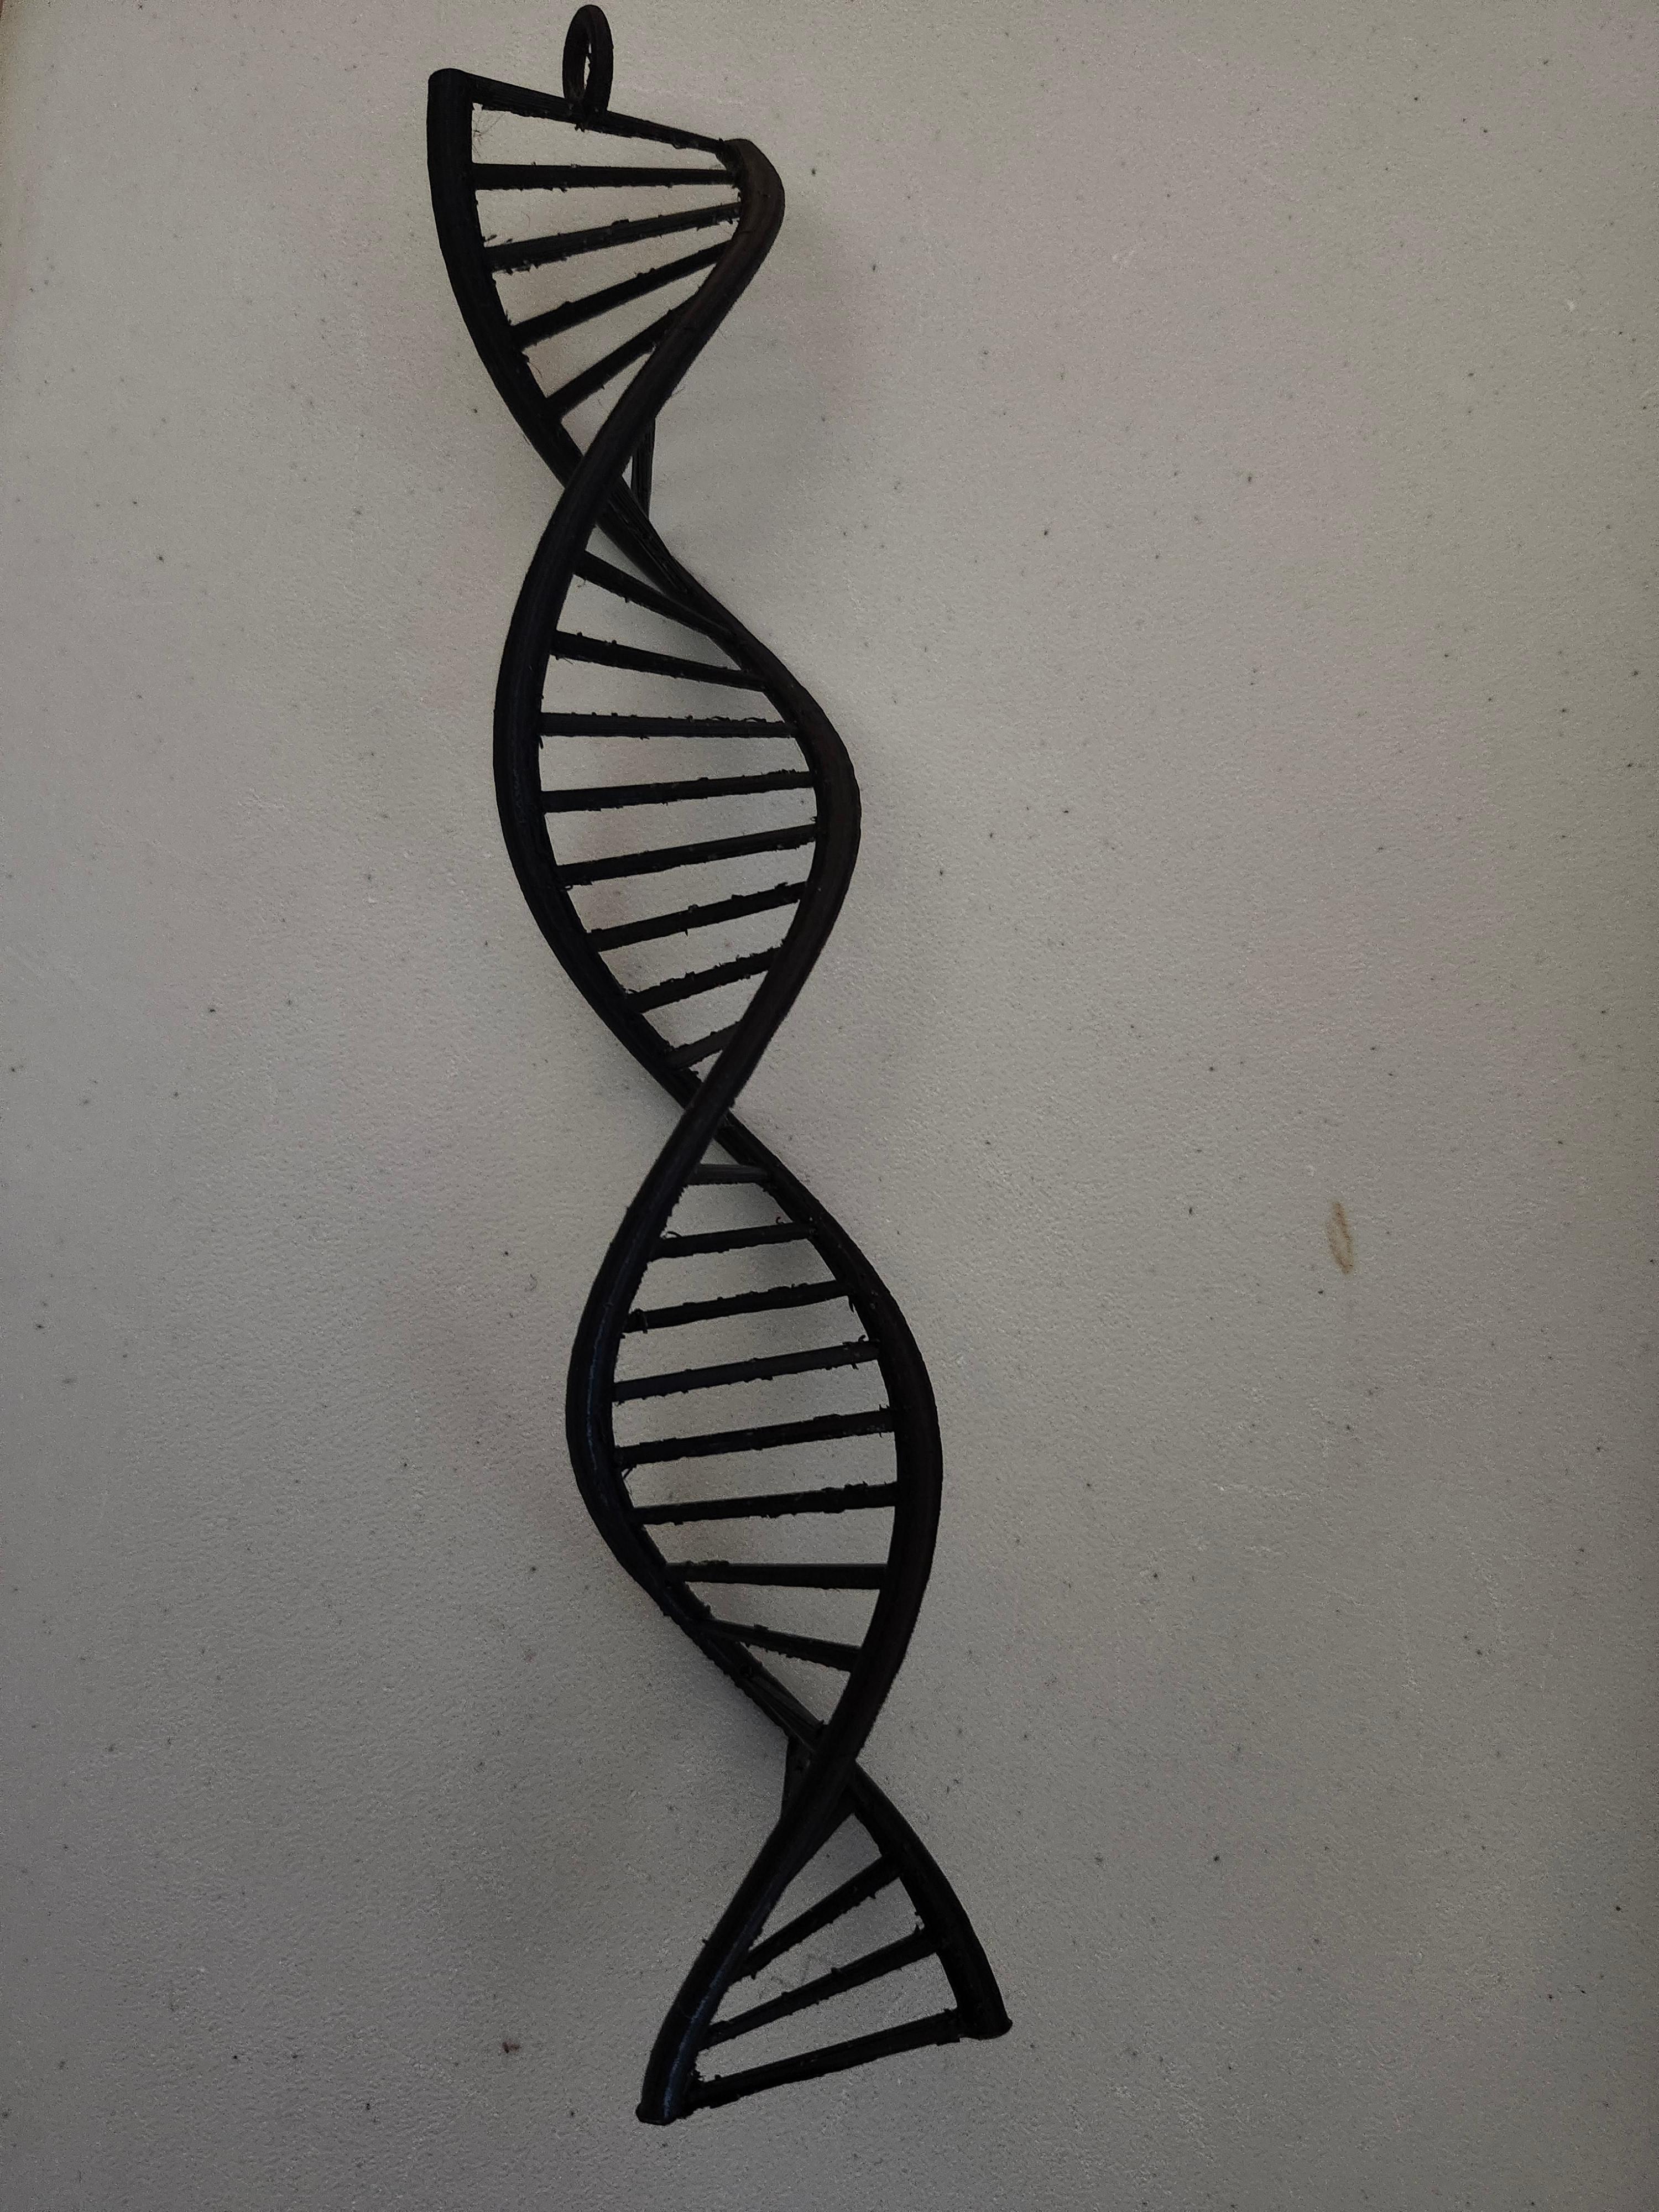 DNA 3d model